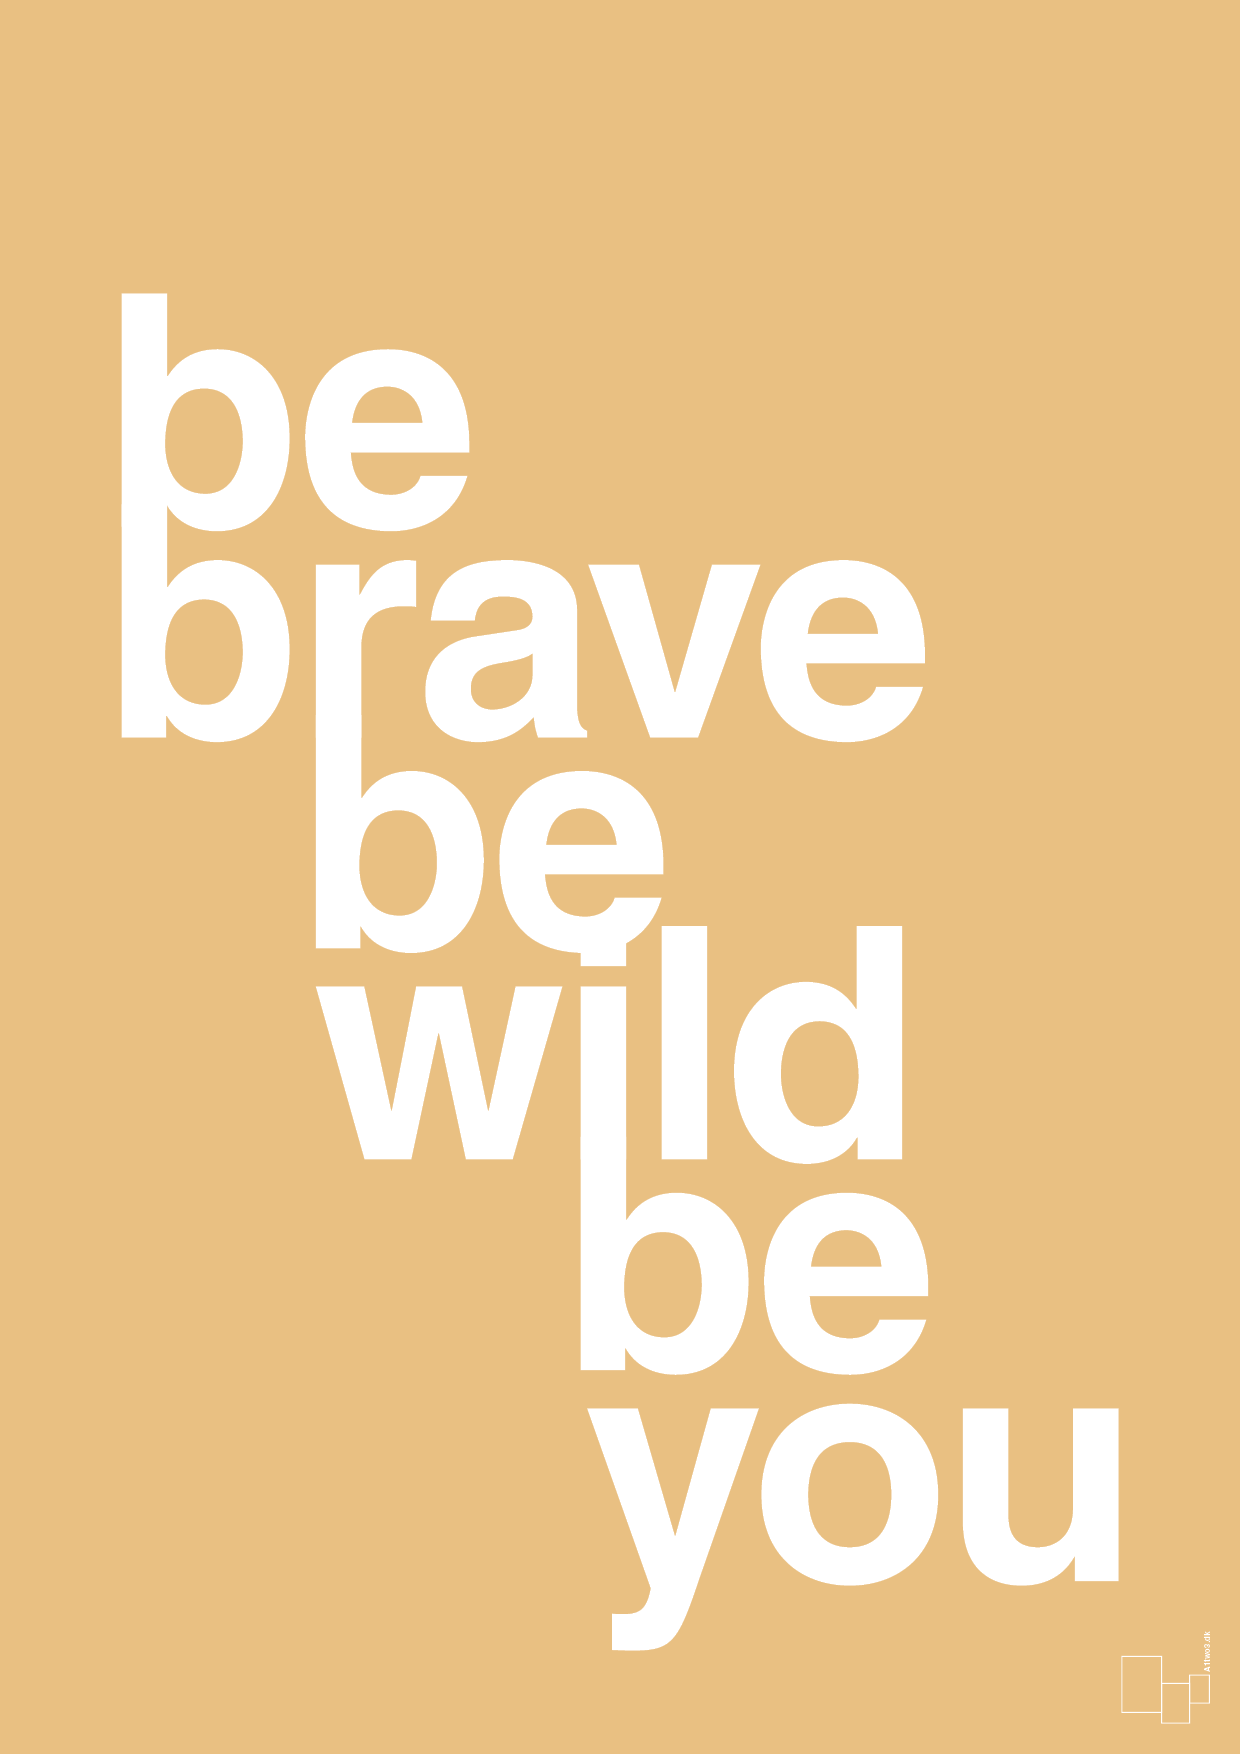 be brave be wild be you - Plakat med Ordsprog i Charismatic